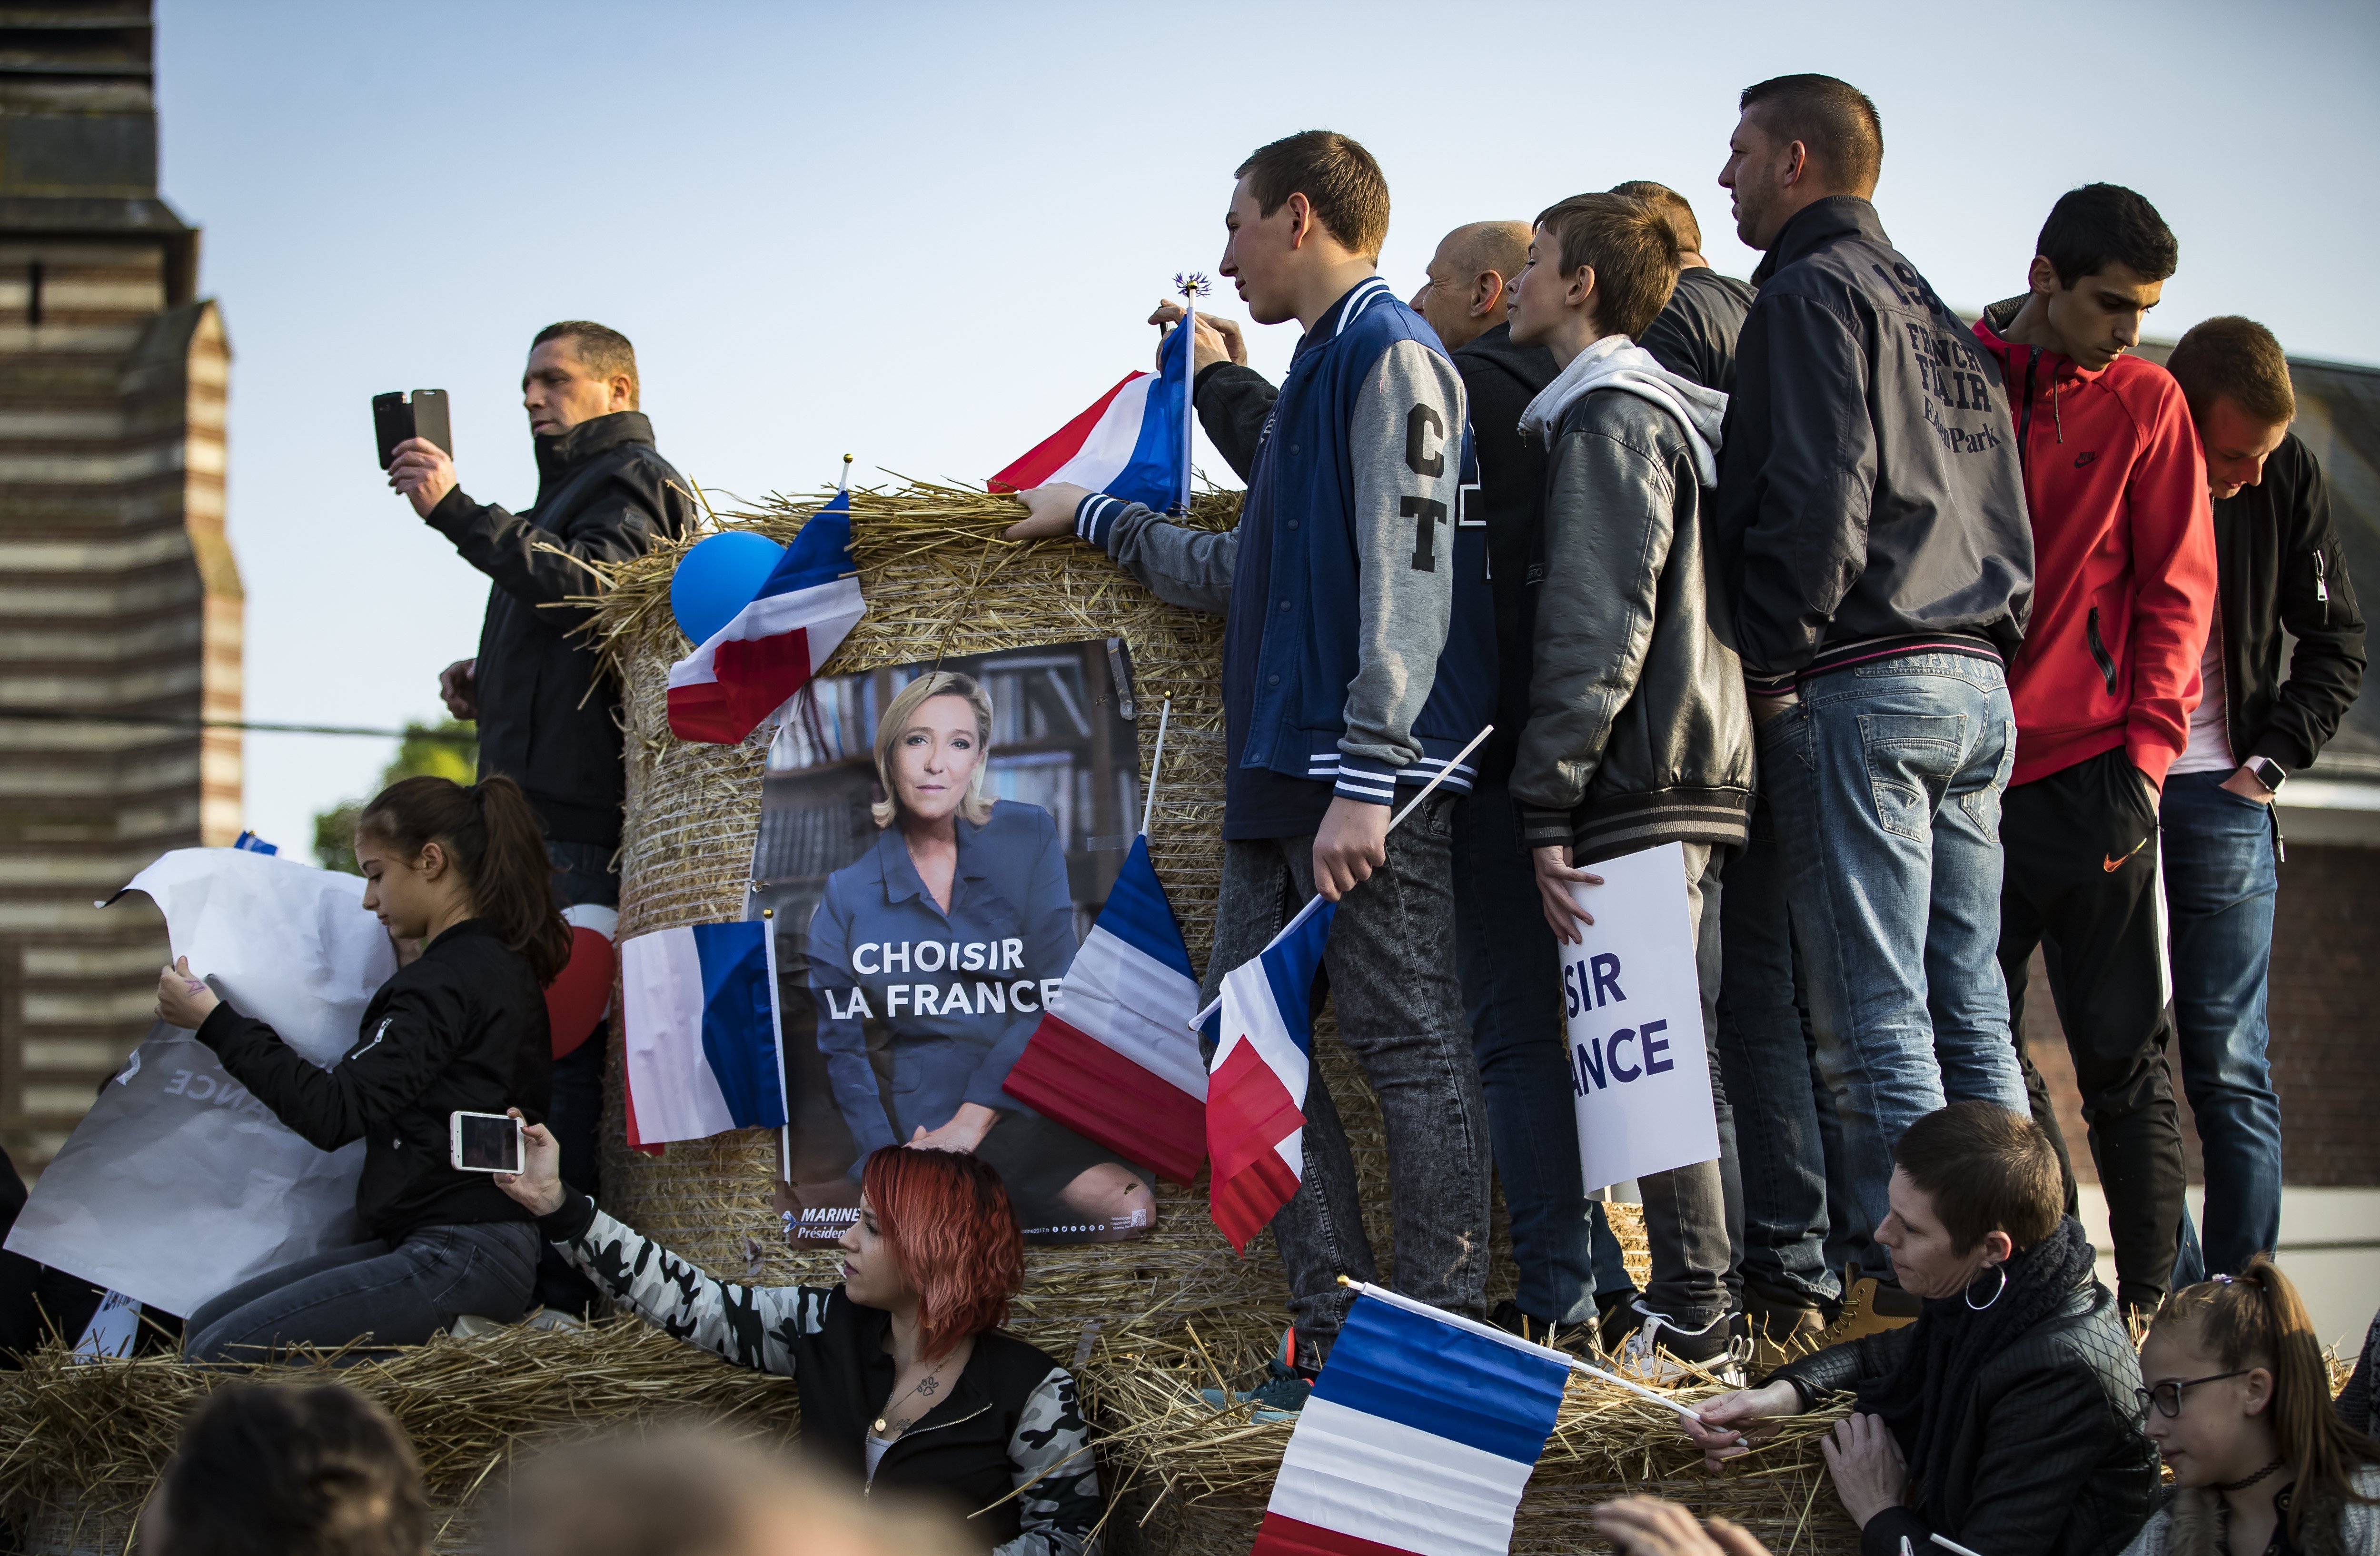 L'escenari que pot fer guanyar Marine Le Pen